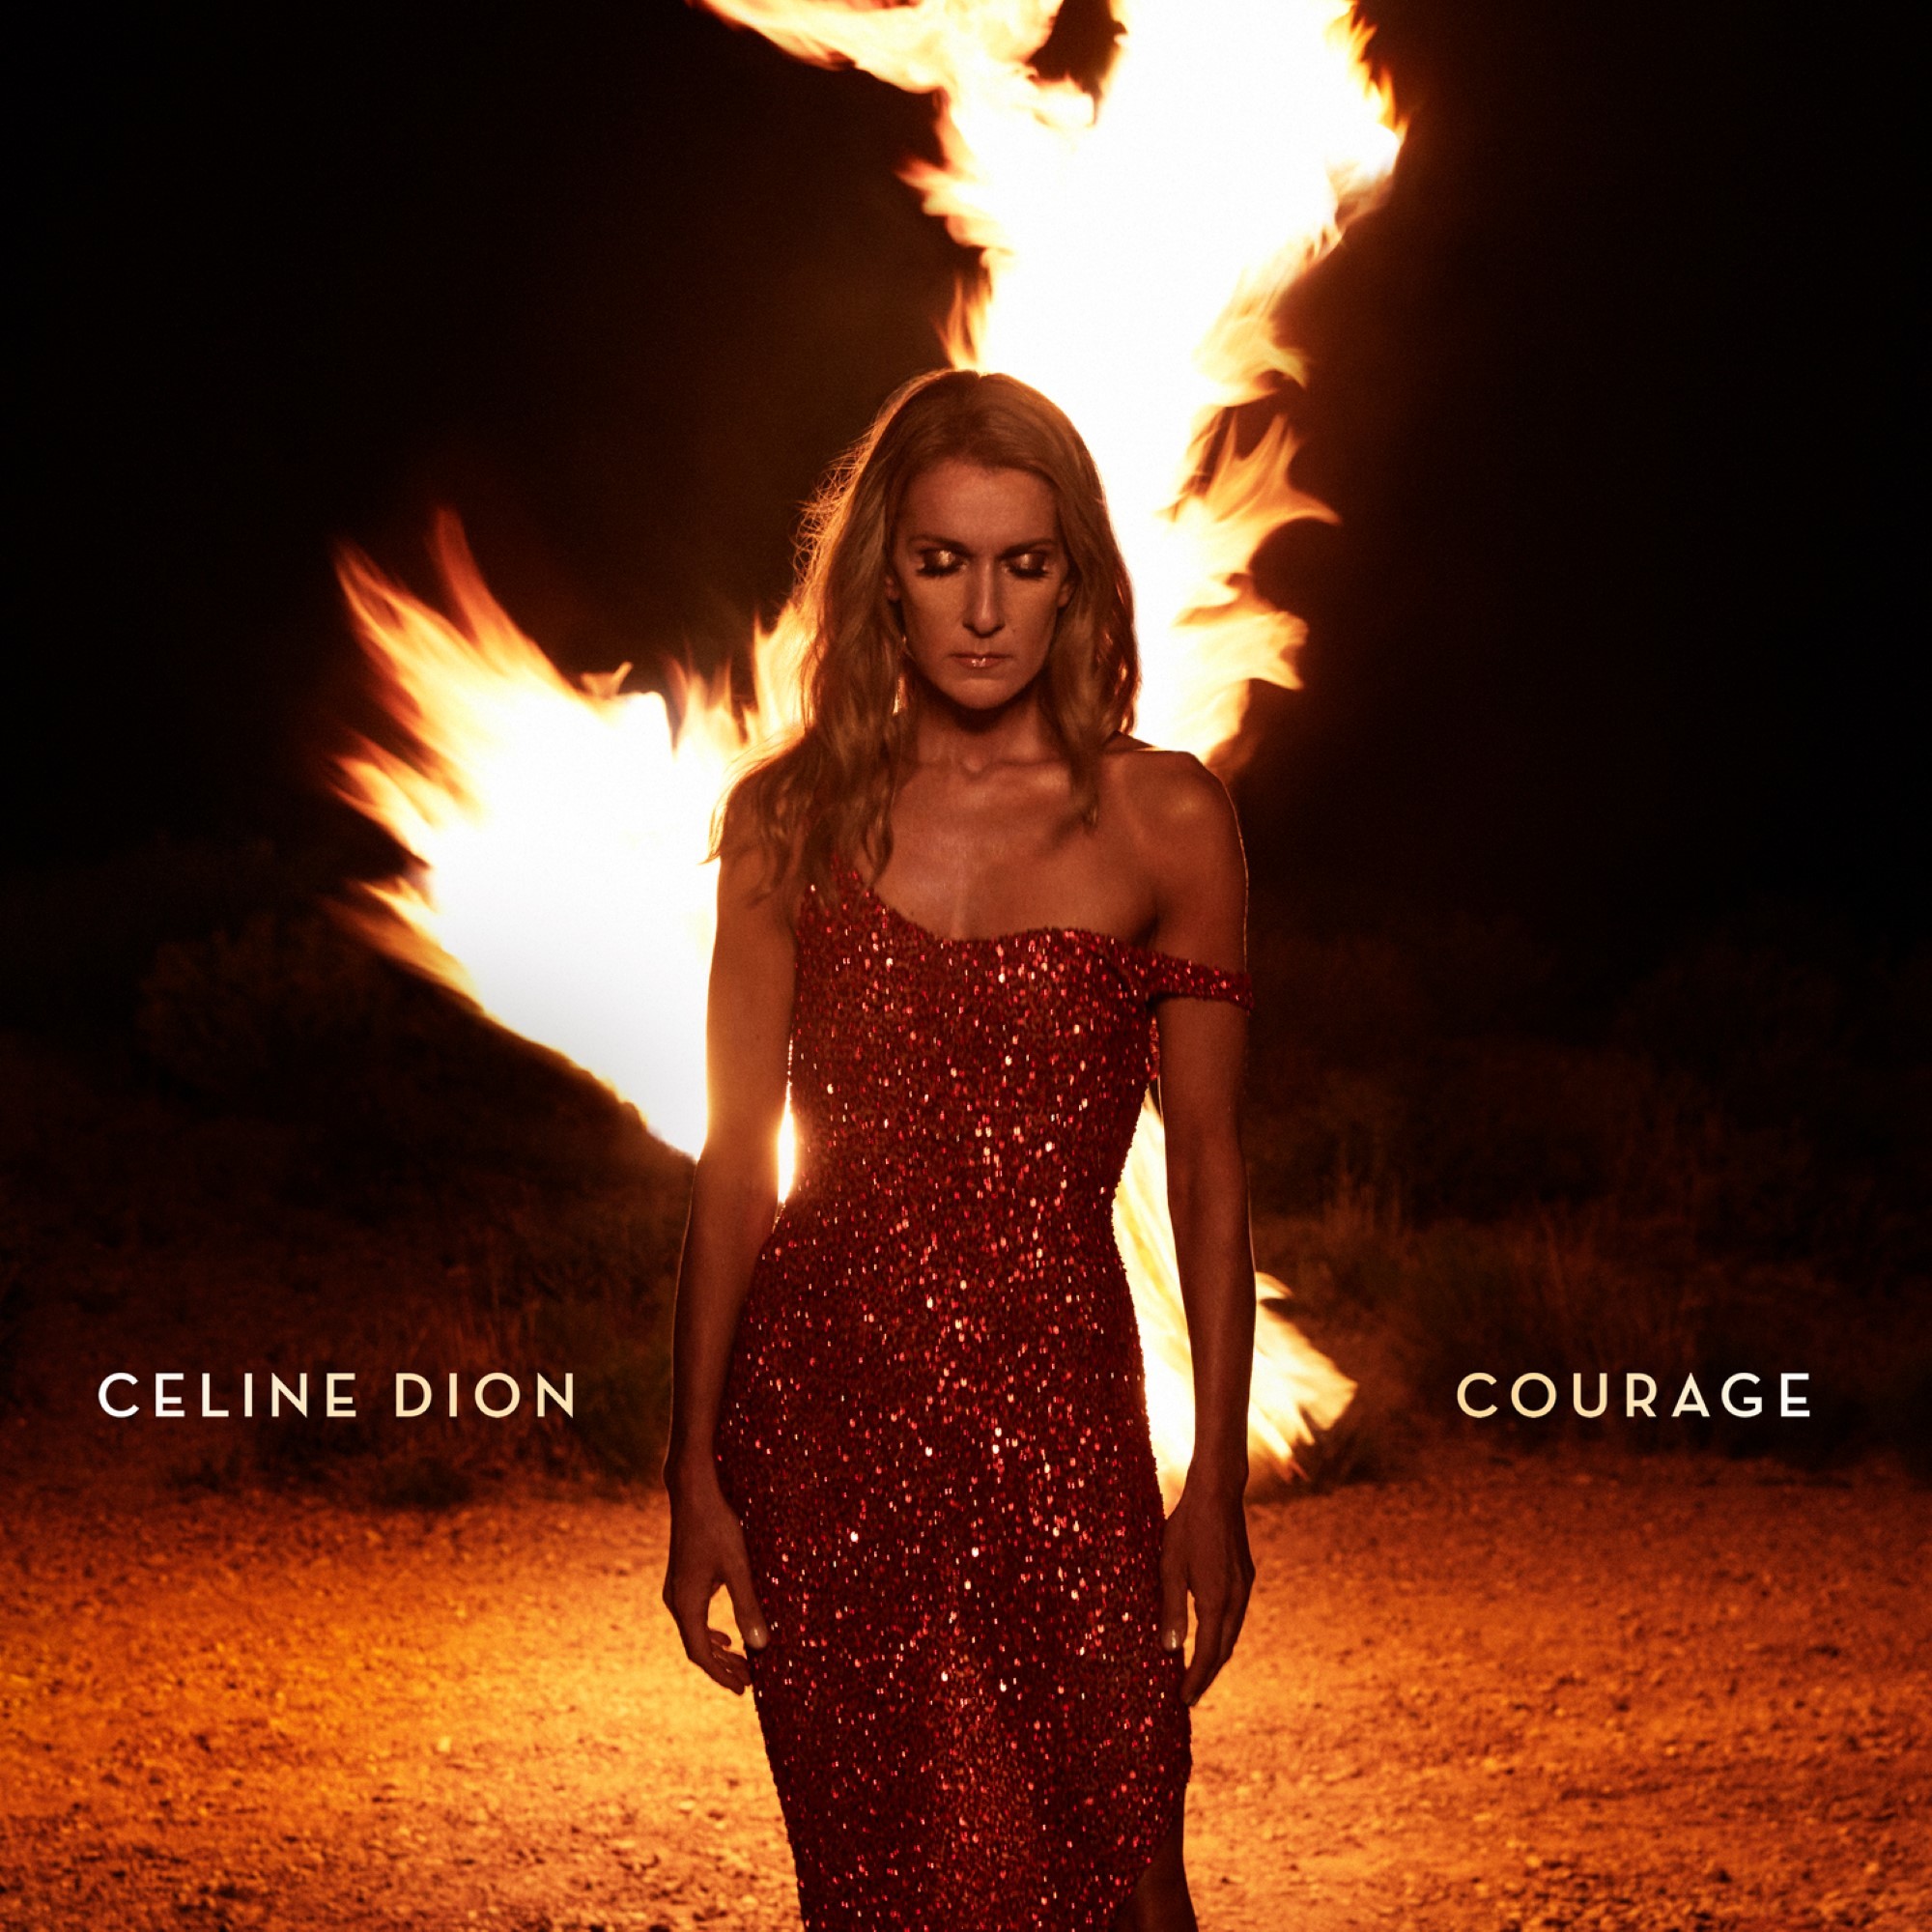 Courage|Céline Dion